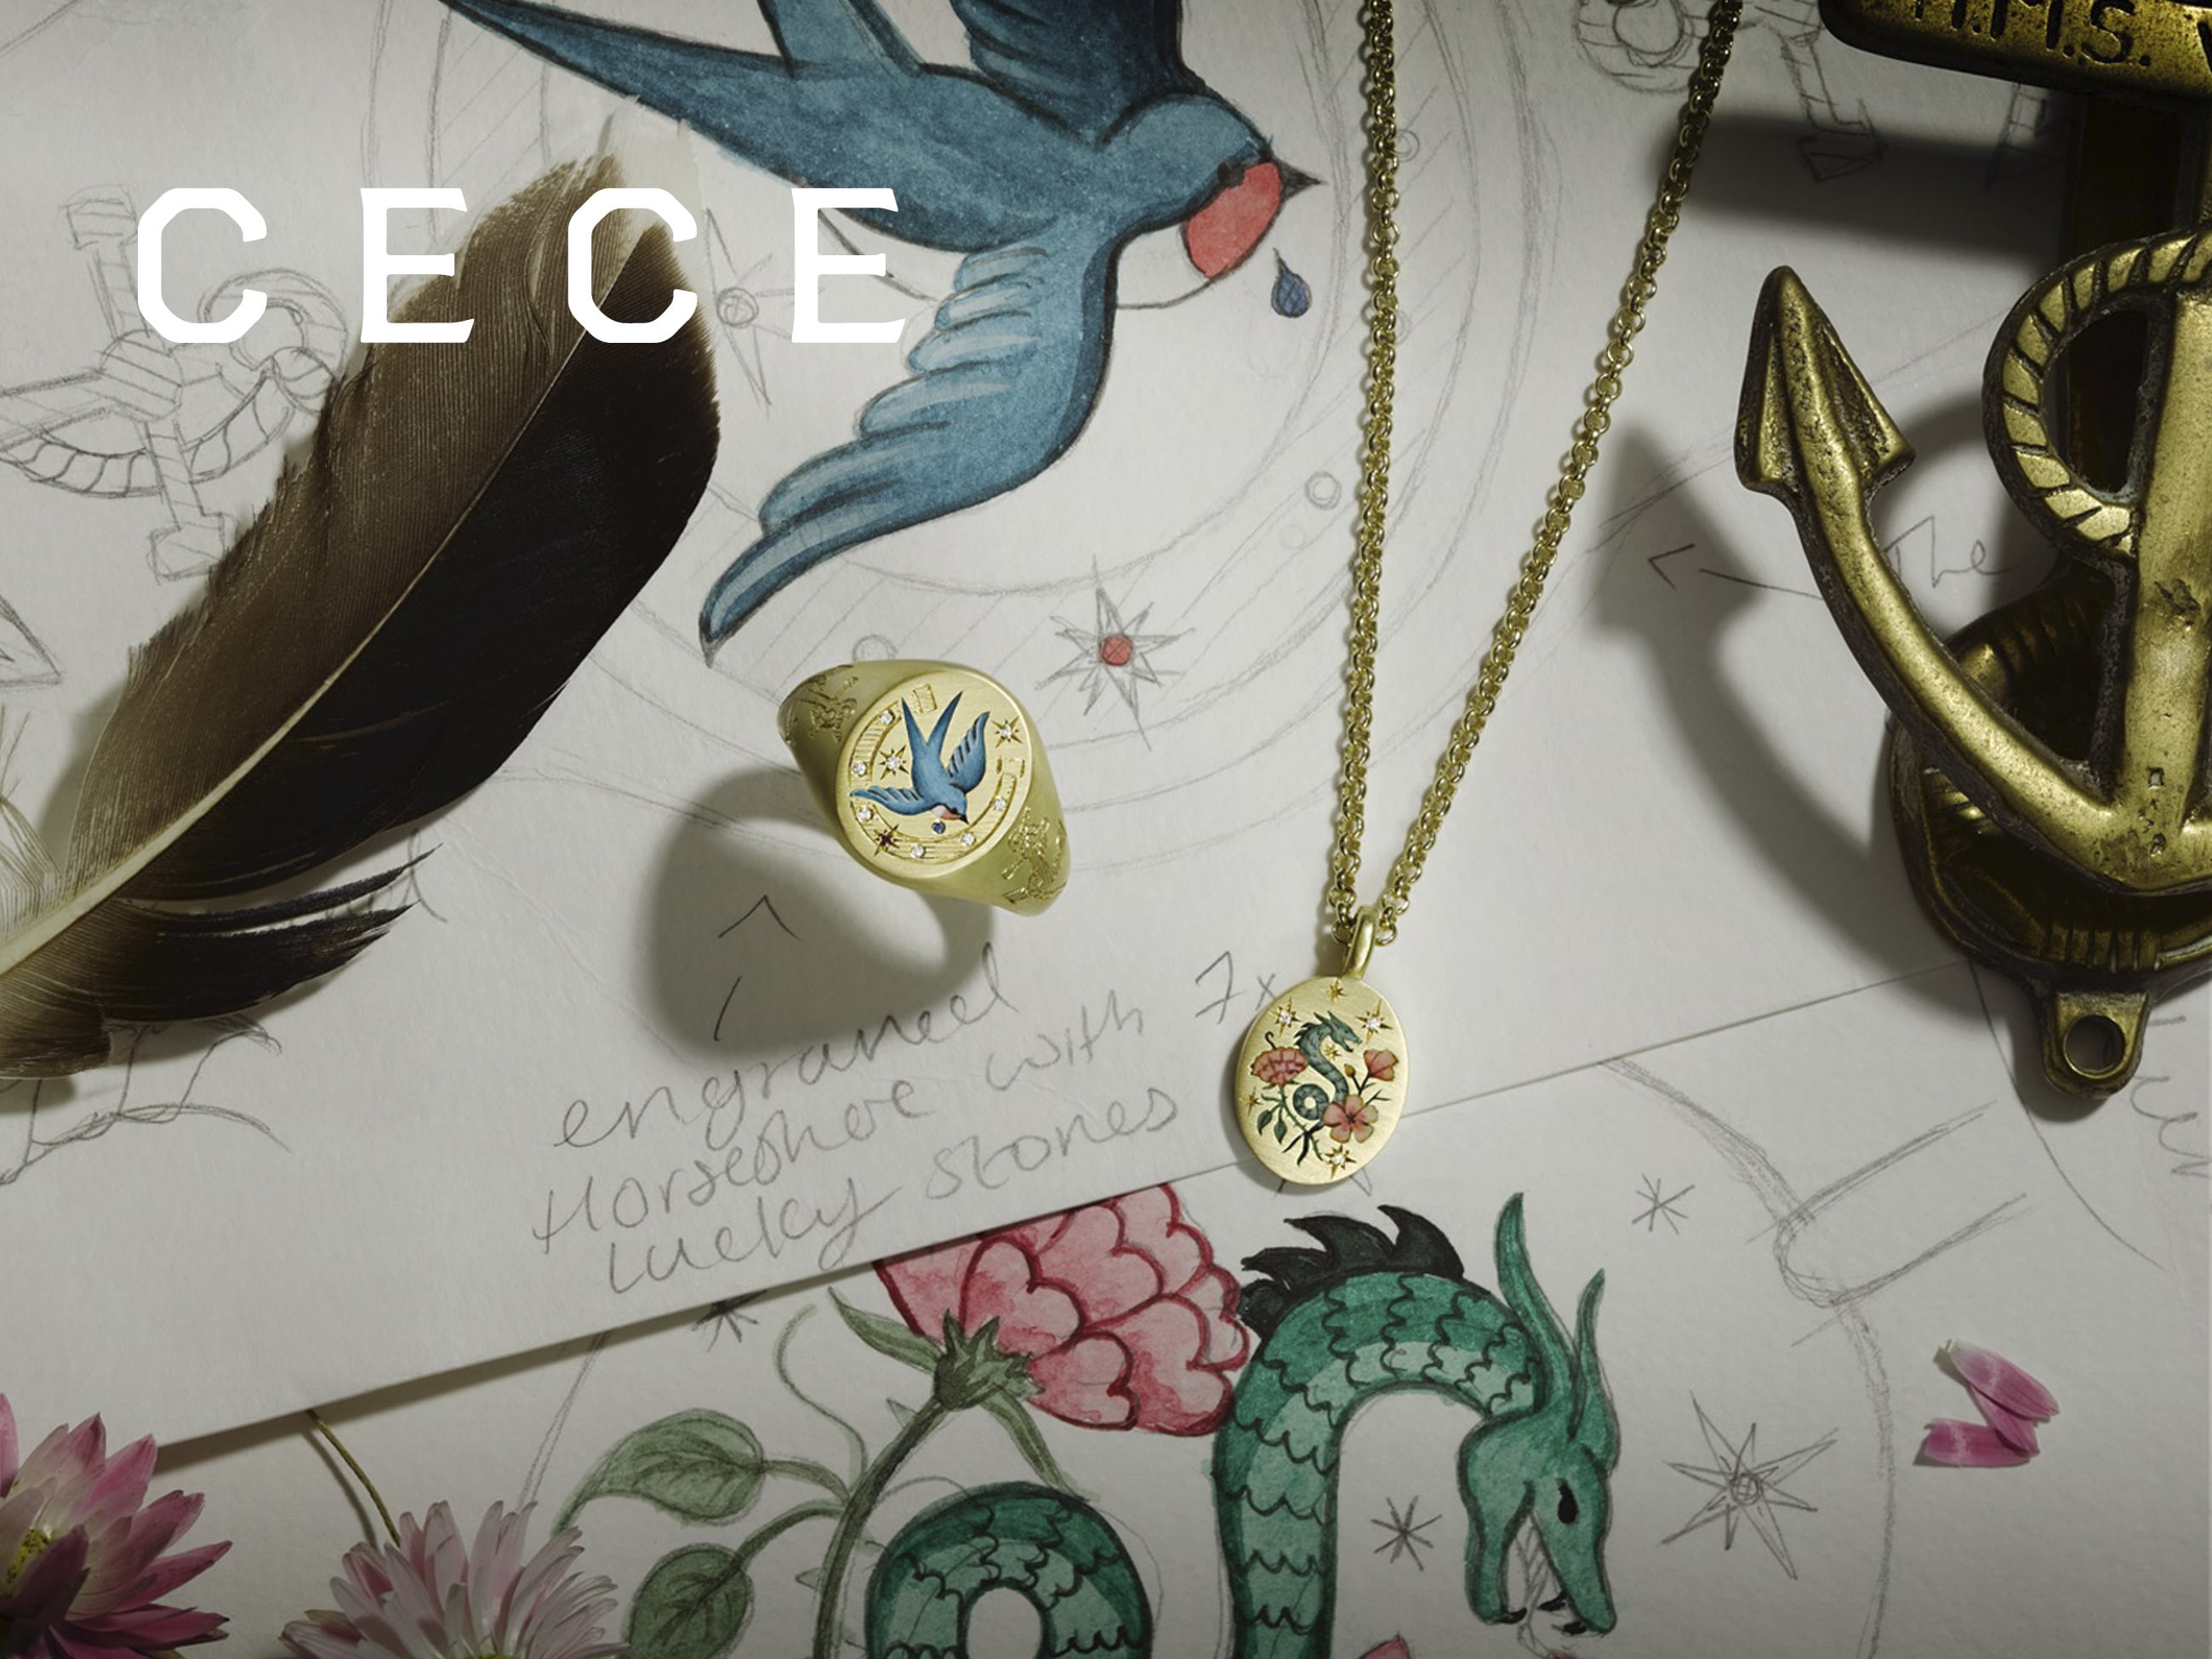 Cece Jewellery close up event